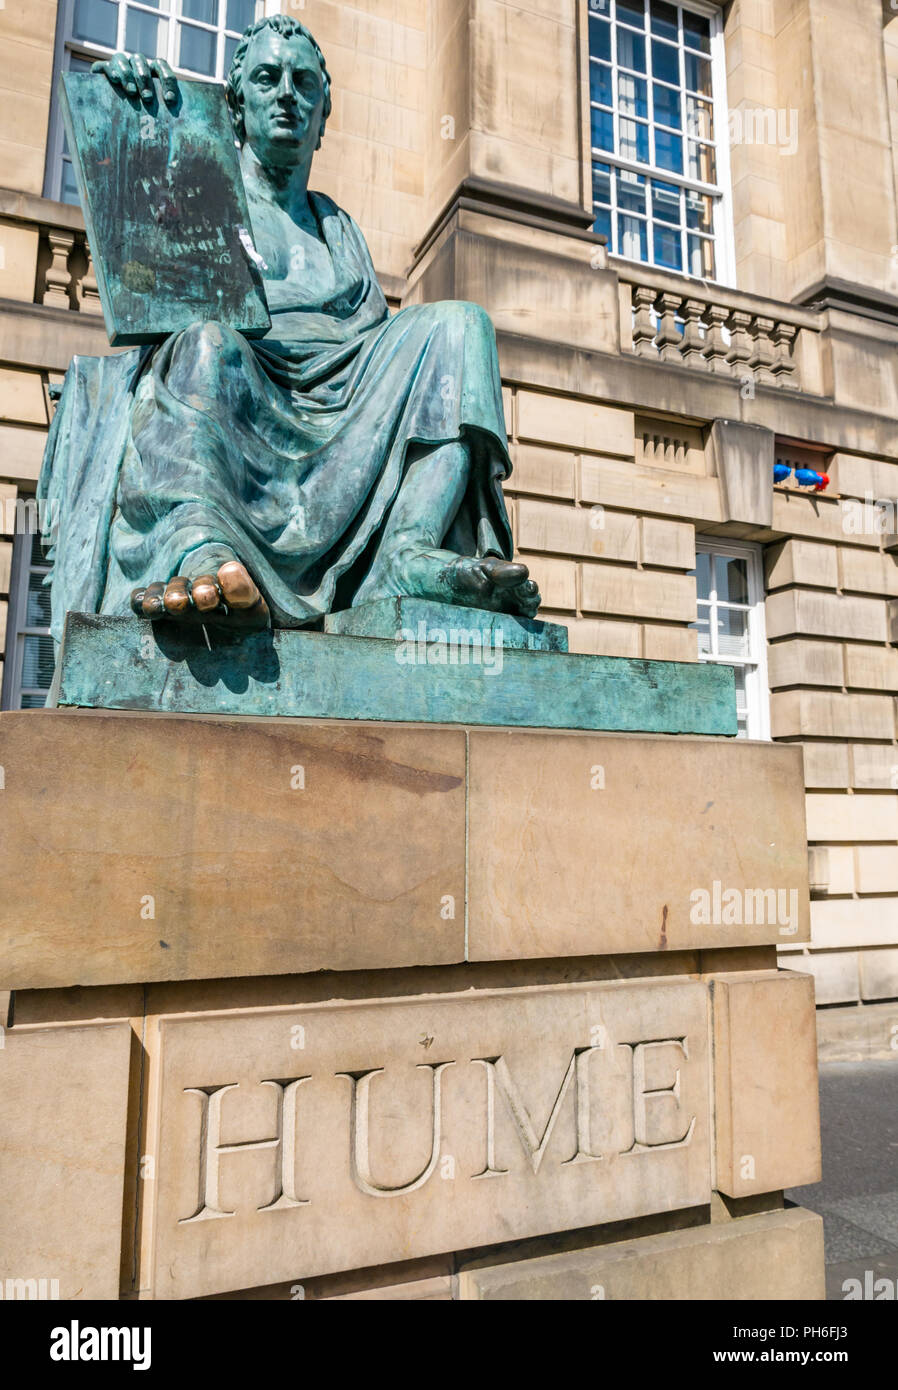 David Hume statua in bronzo da Alexander Stoddart, Edimburgo Alta Corte di Justiciary, Royal Mile di Edimburgo, Scozia, Regno Unito sfregato con le dita dei piedi Foto Stock